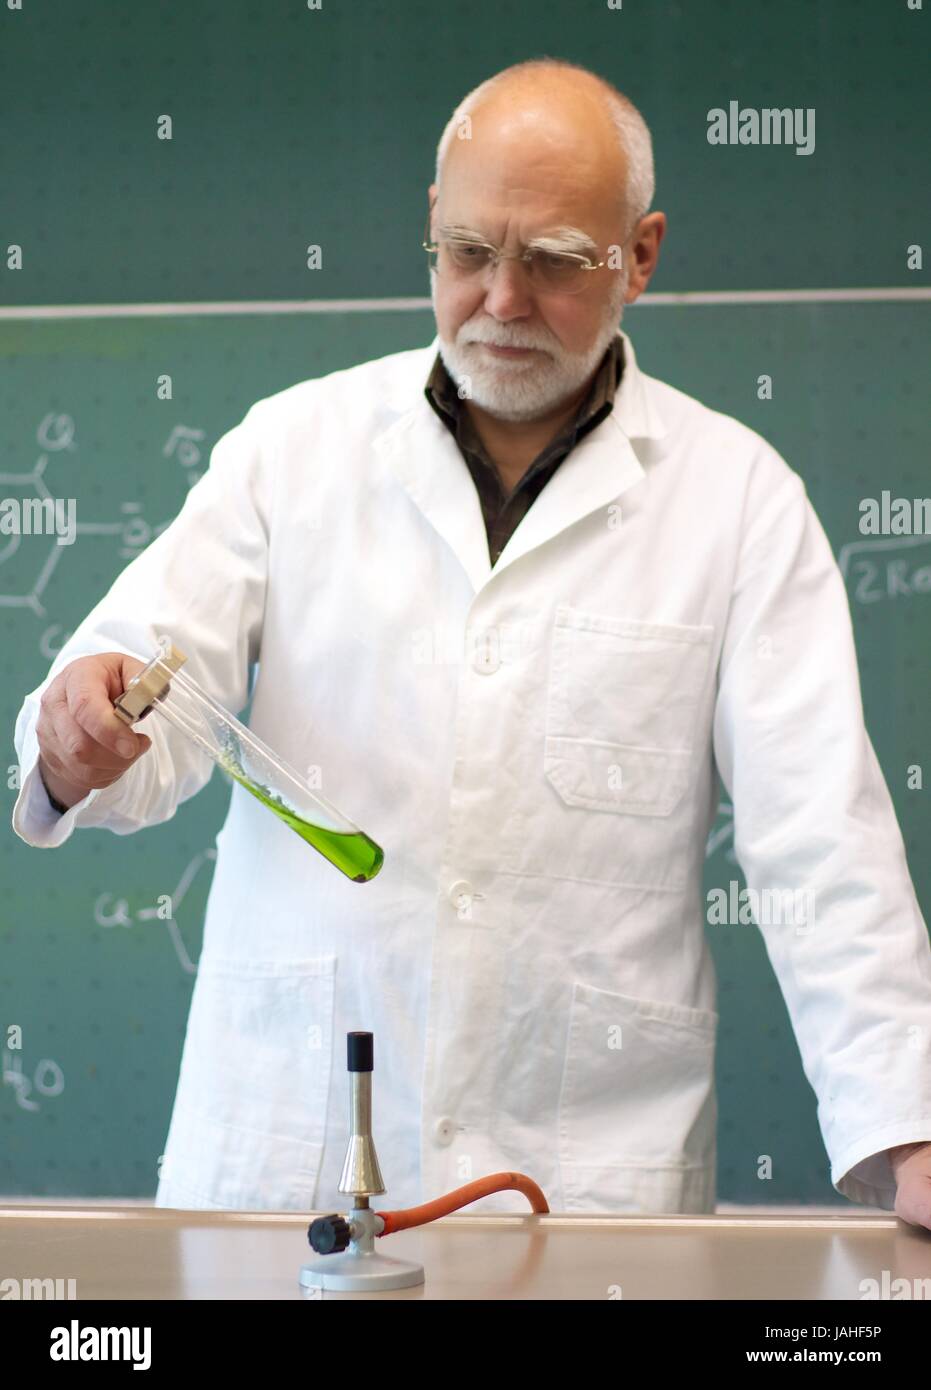 Lehrer erhitzt Chemikalien in einem Reagenzglas Stock Photo